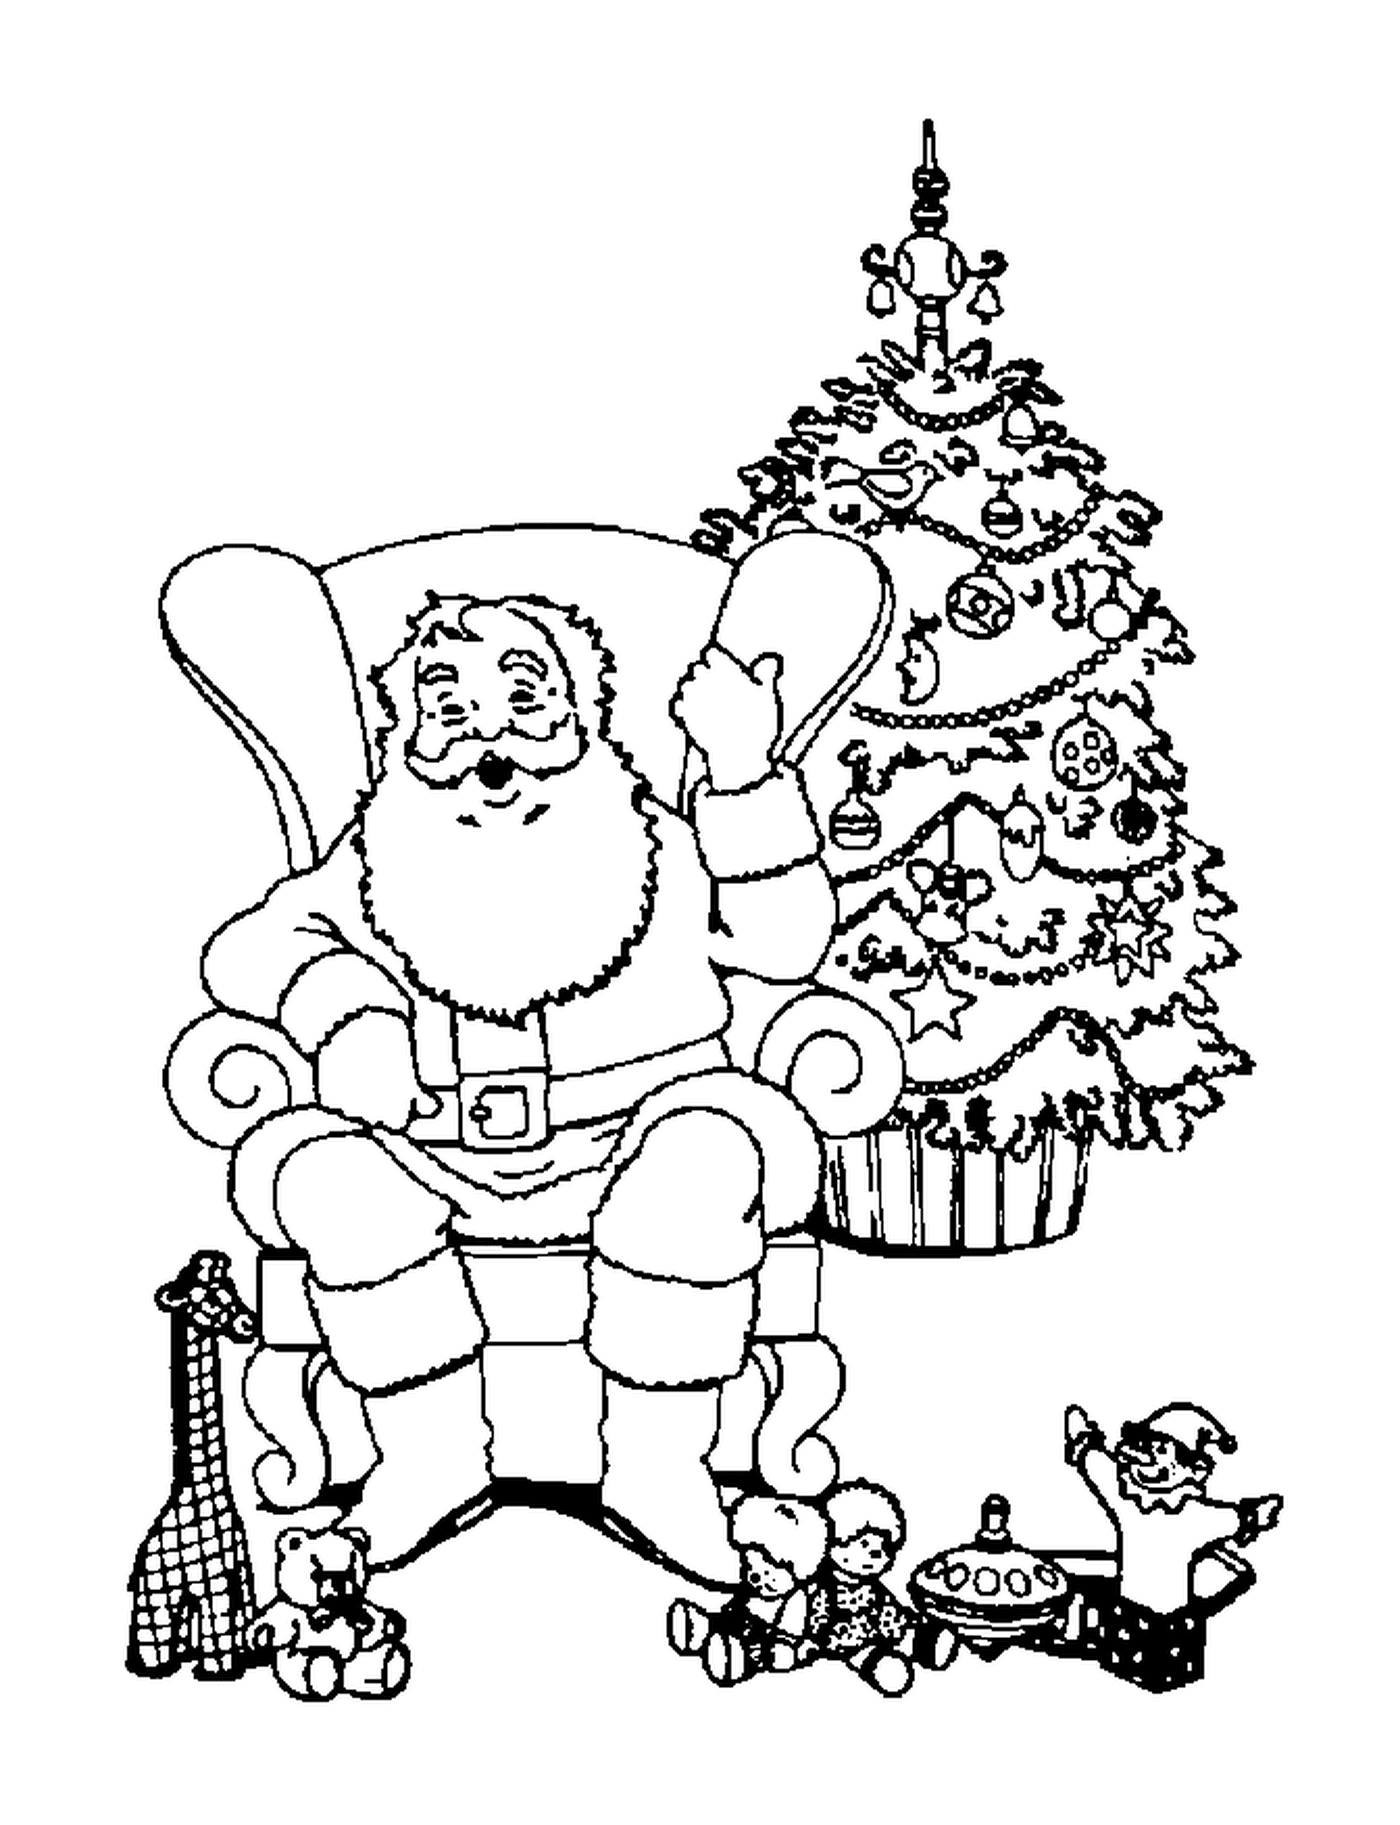  圣诞老人坐在圣诞树旁的椅子上 